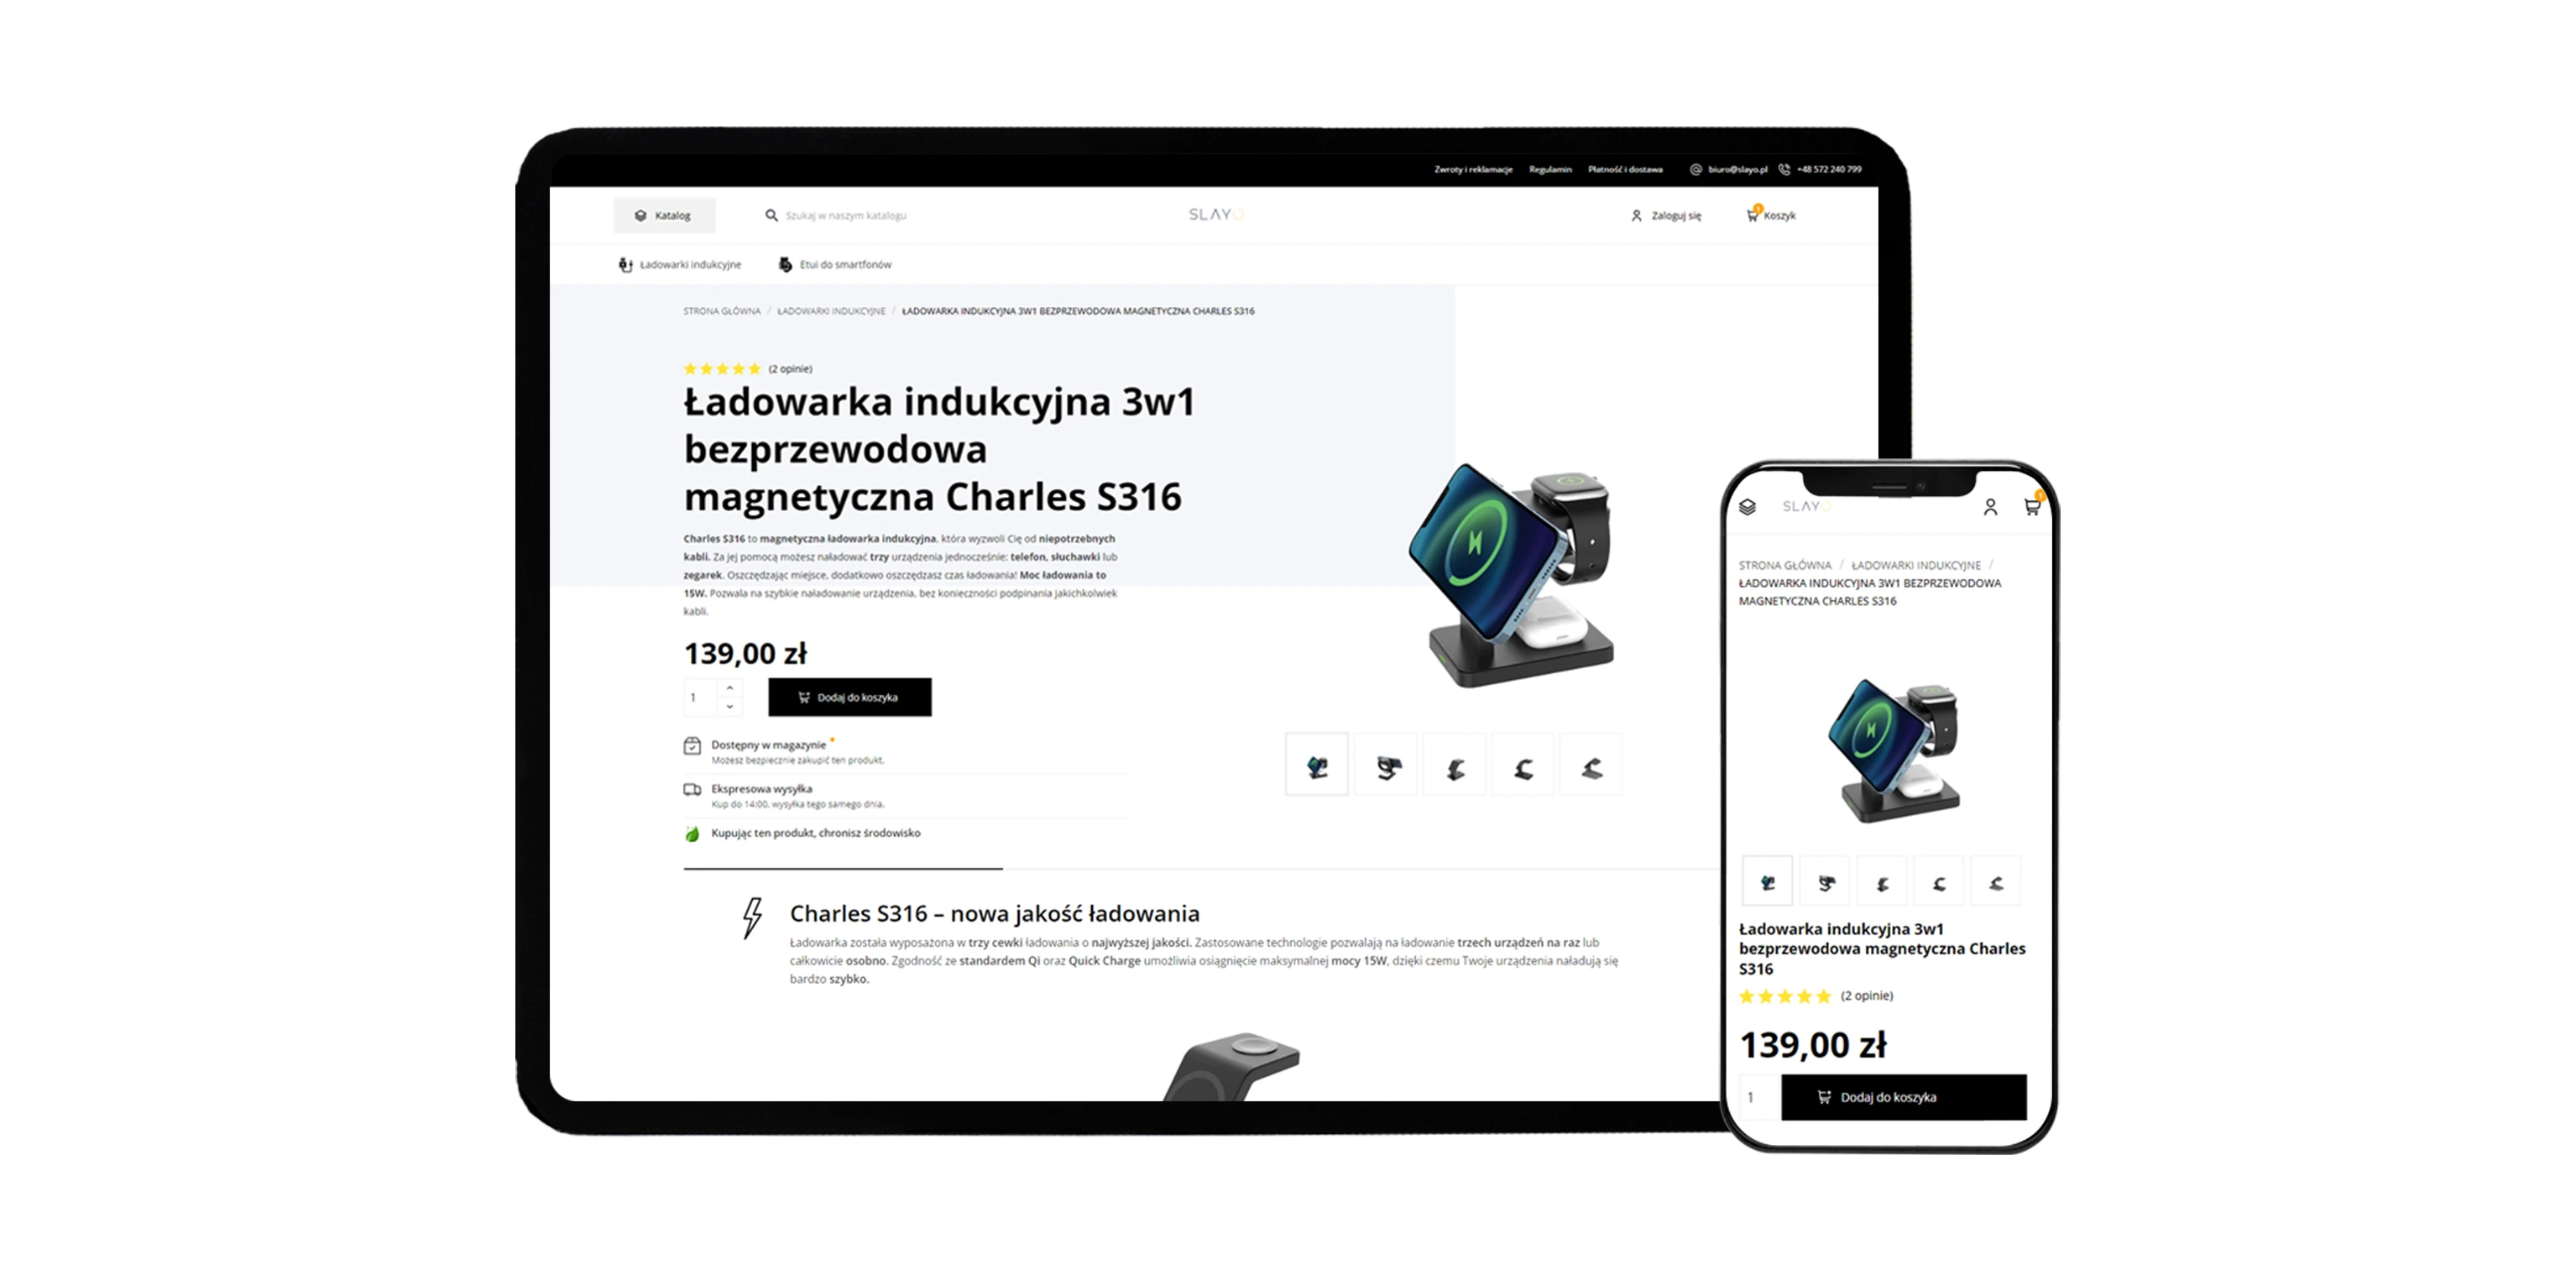 Widok strony produktowej na urządzeniach mobilnych - sklep internetowy slayo.pl